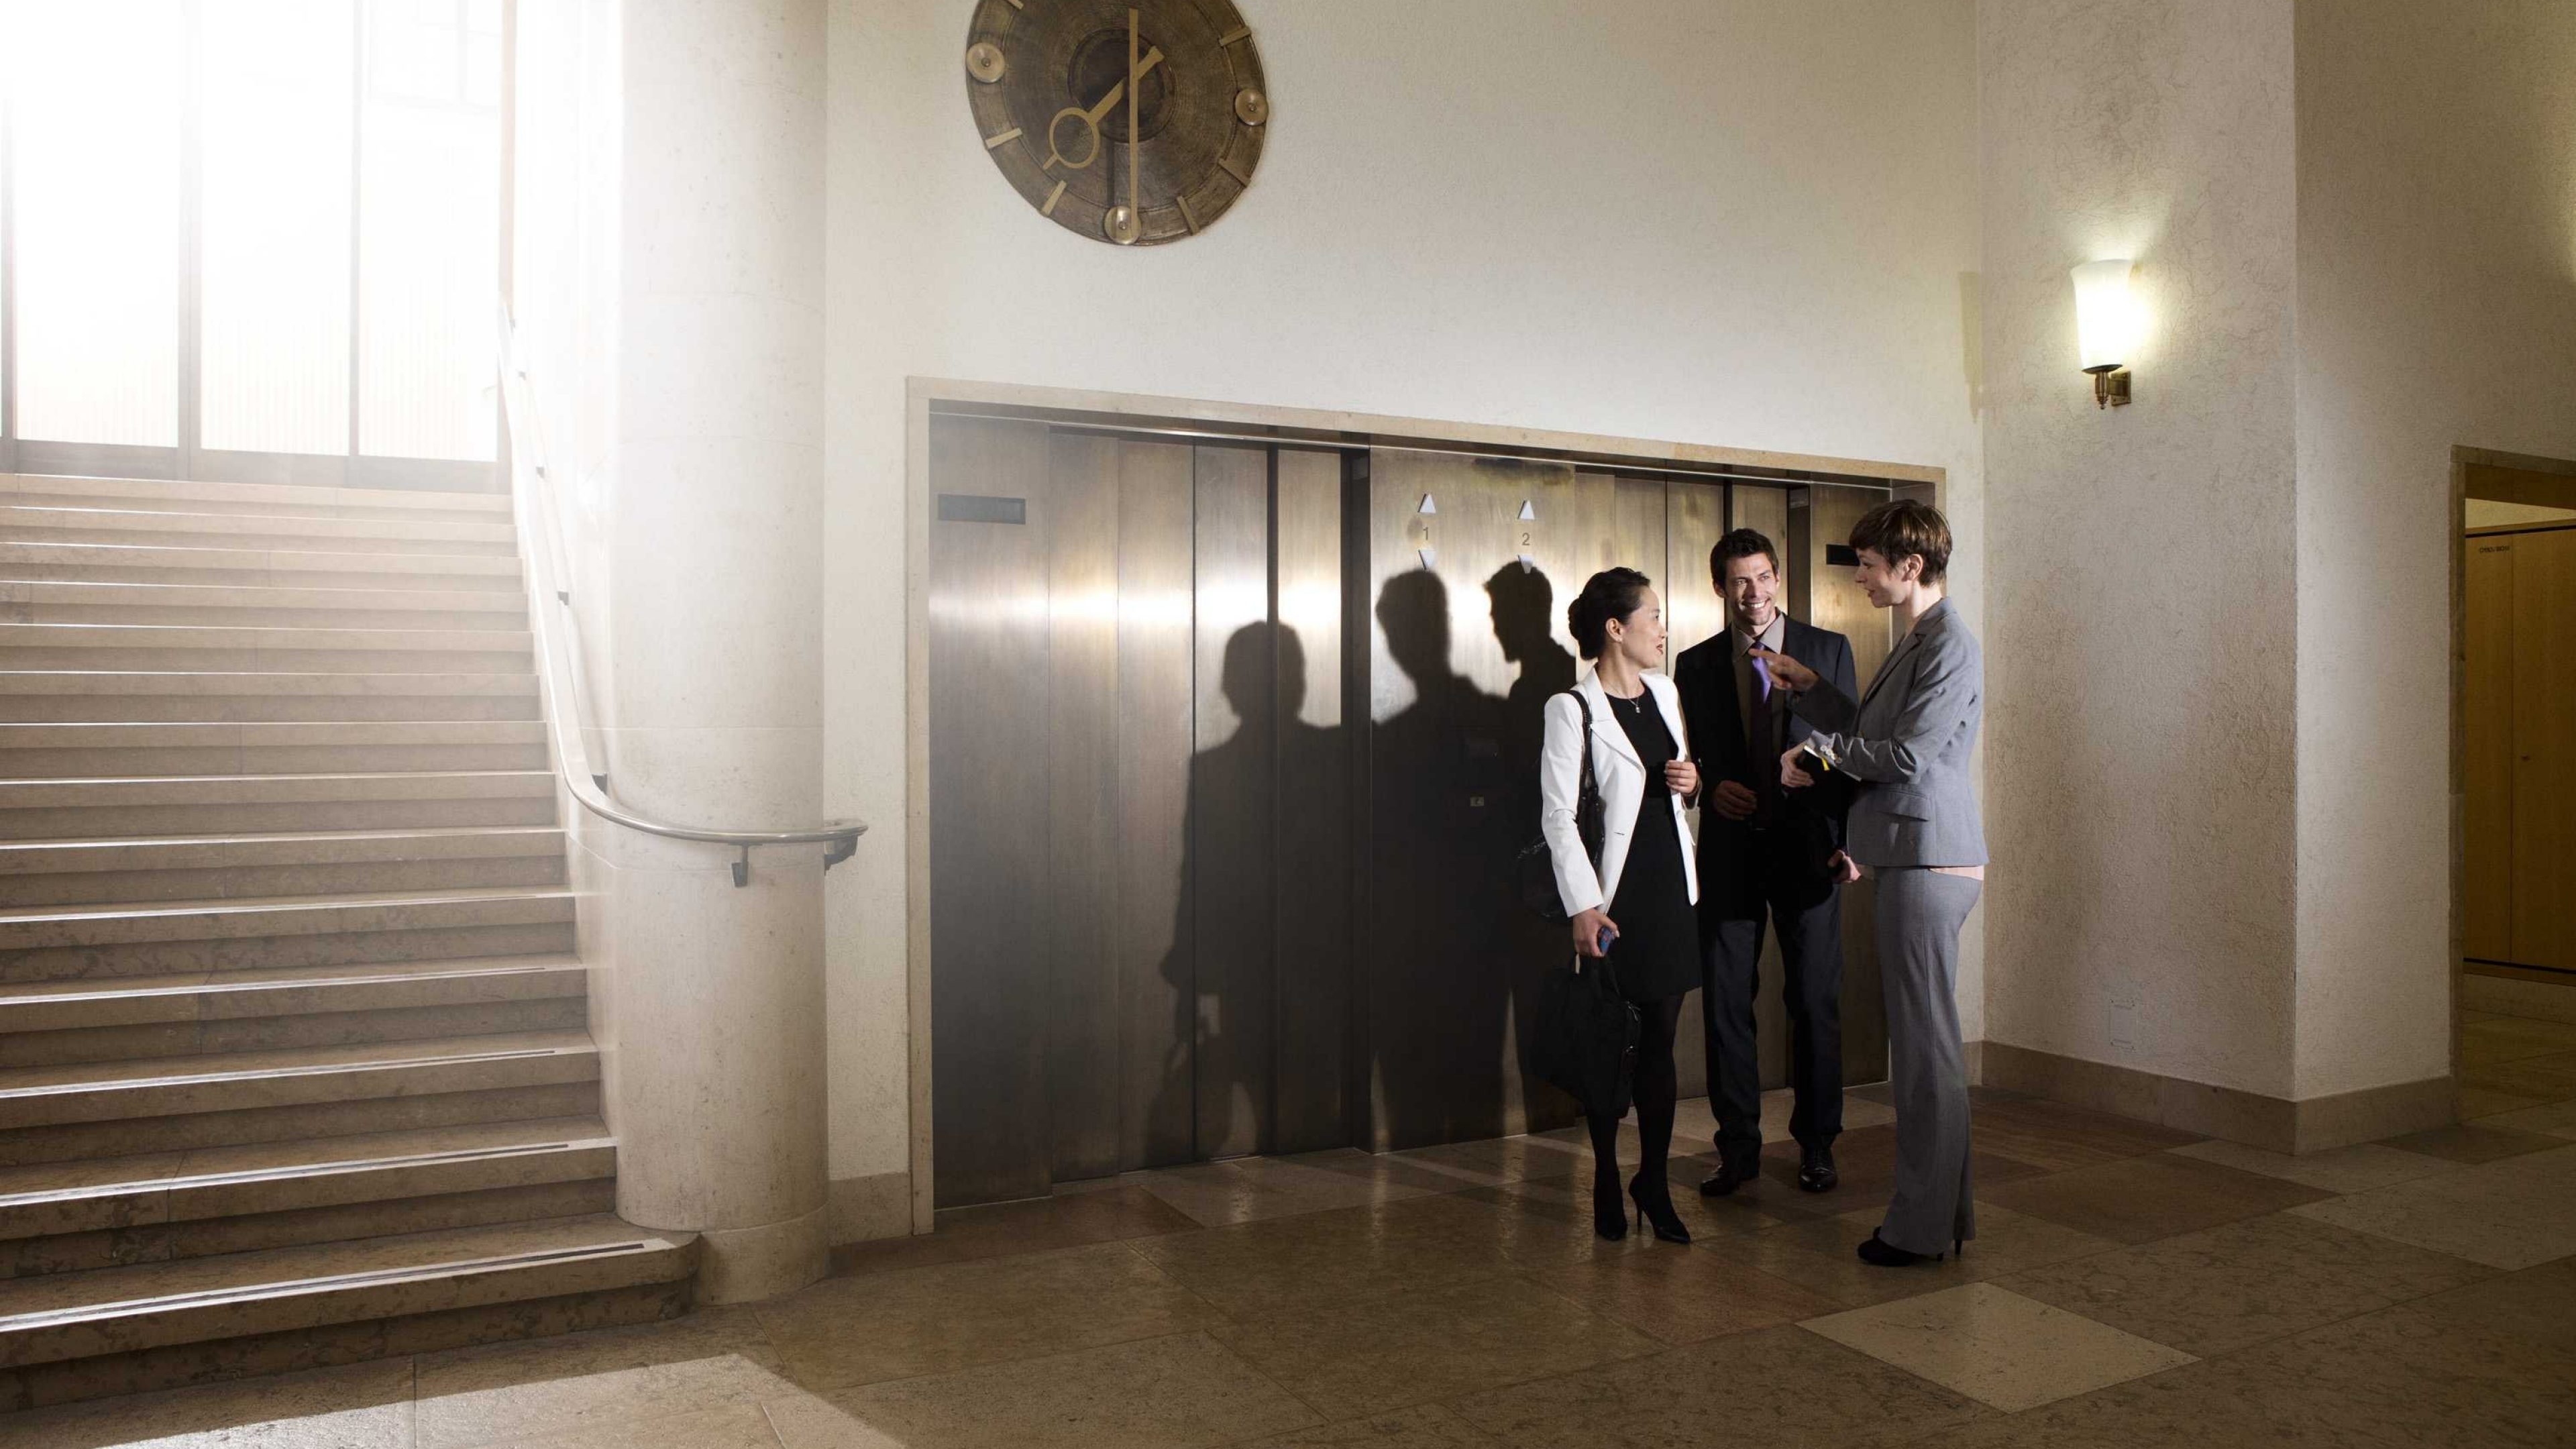 Arbeitskollegen stehen vor dem Aufzug eines Grossunternehmens.